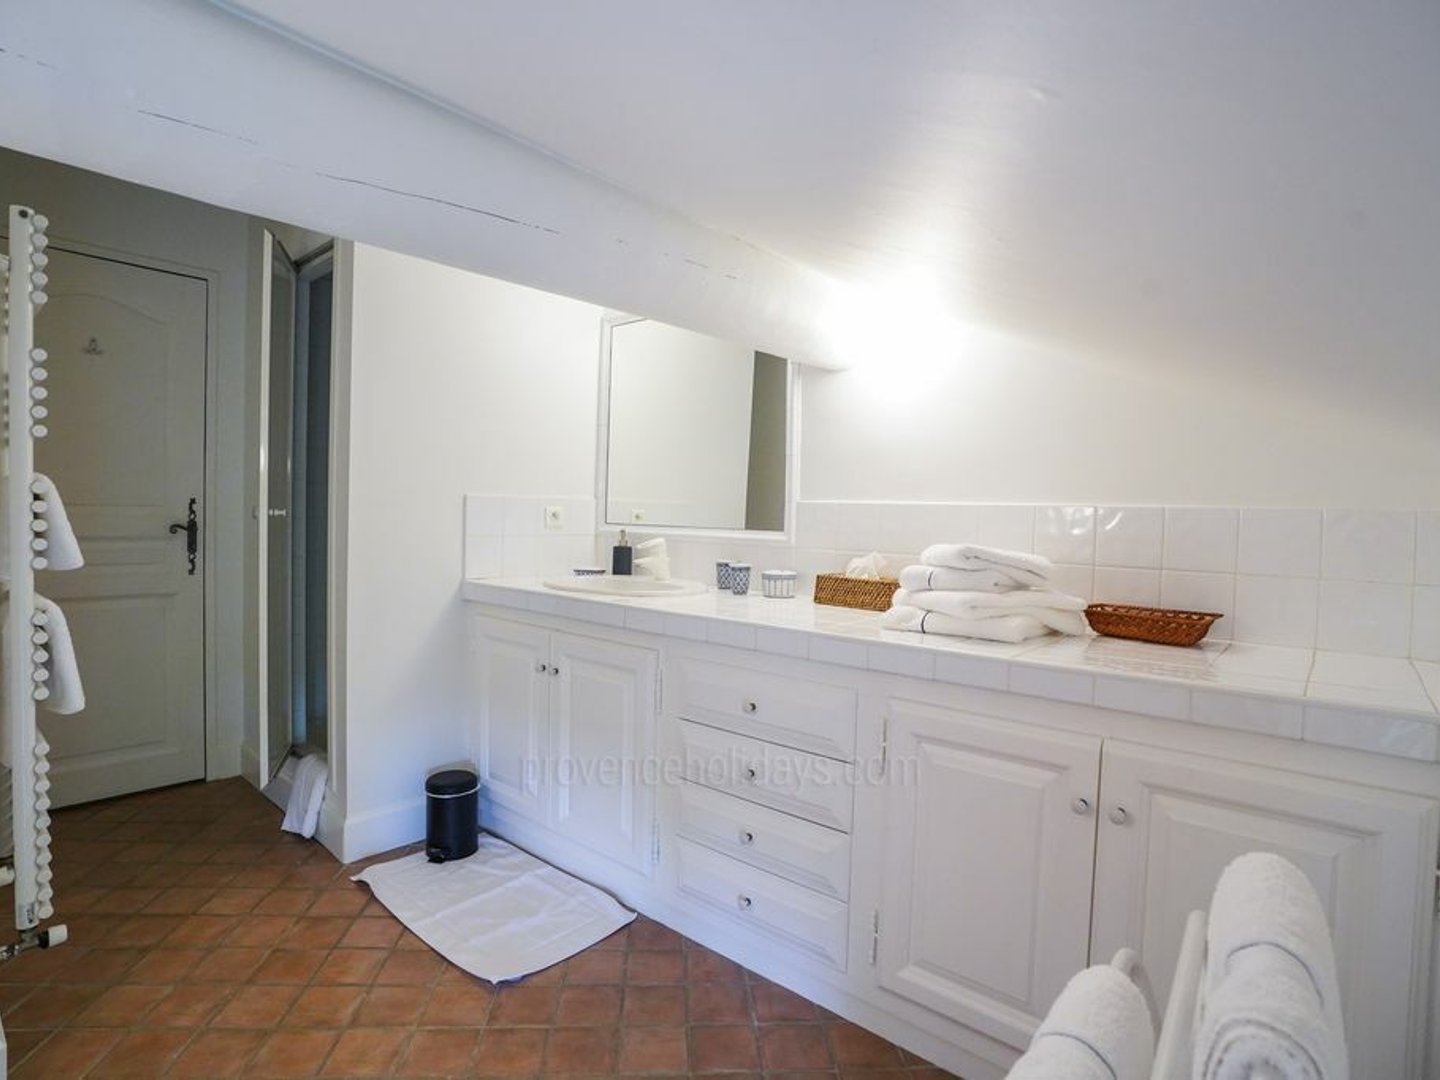 40 - Mas Saint-Andiol: Villa: Bathroom